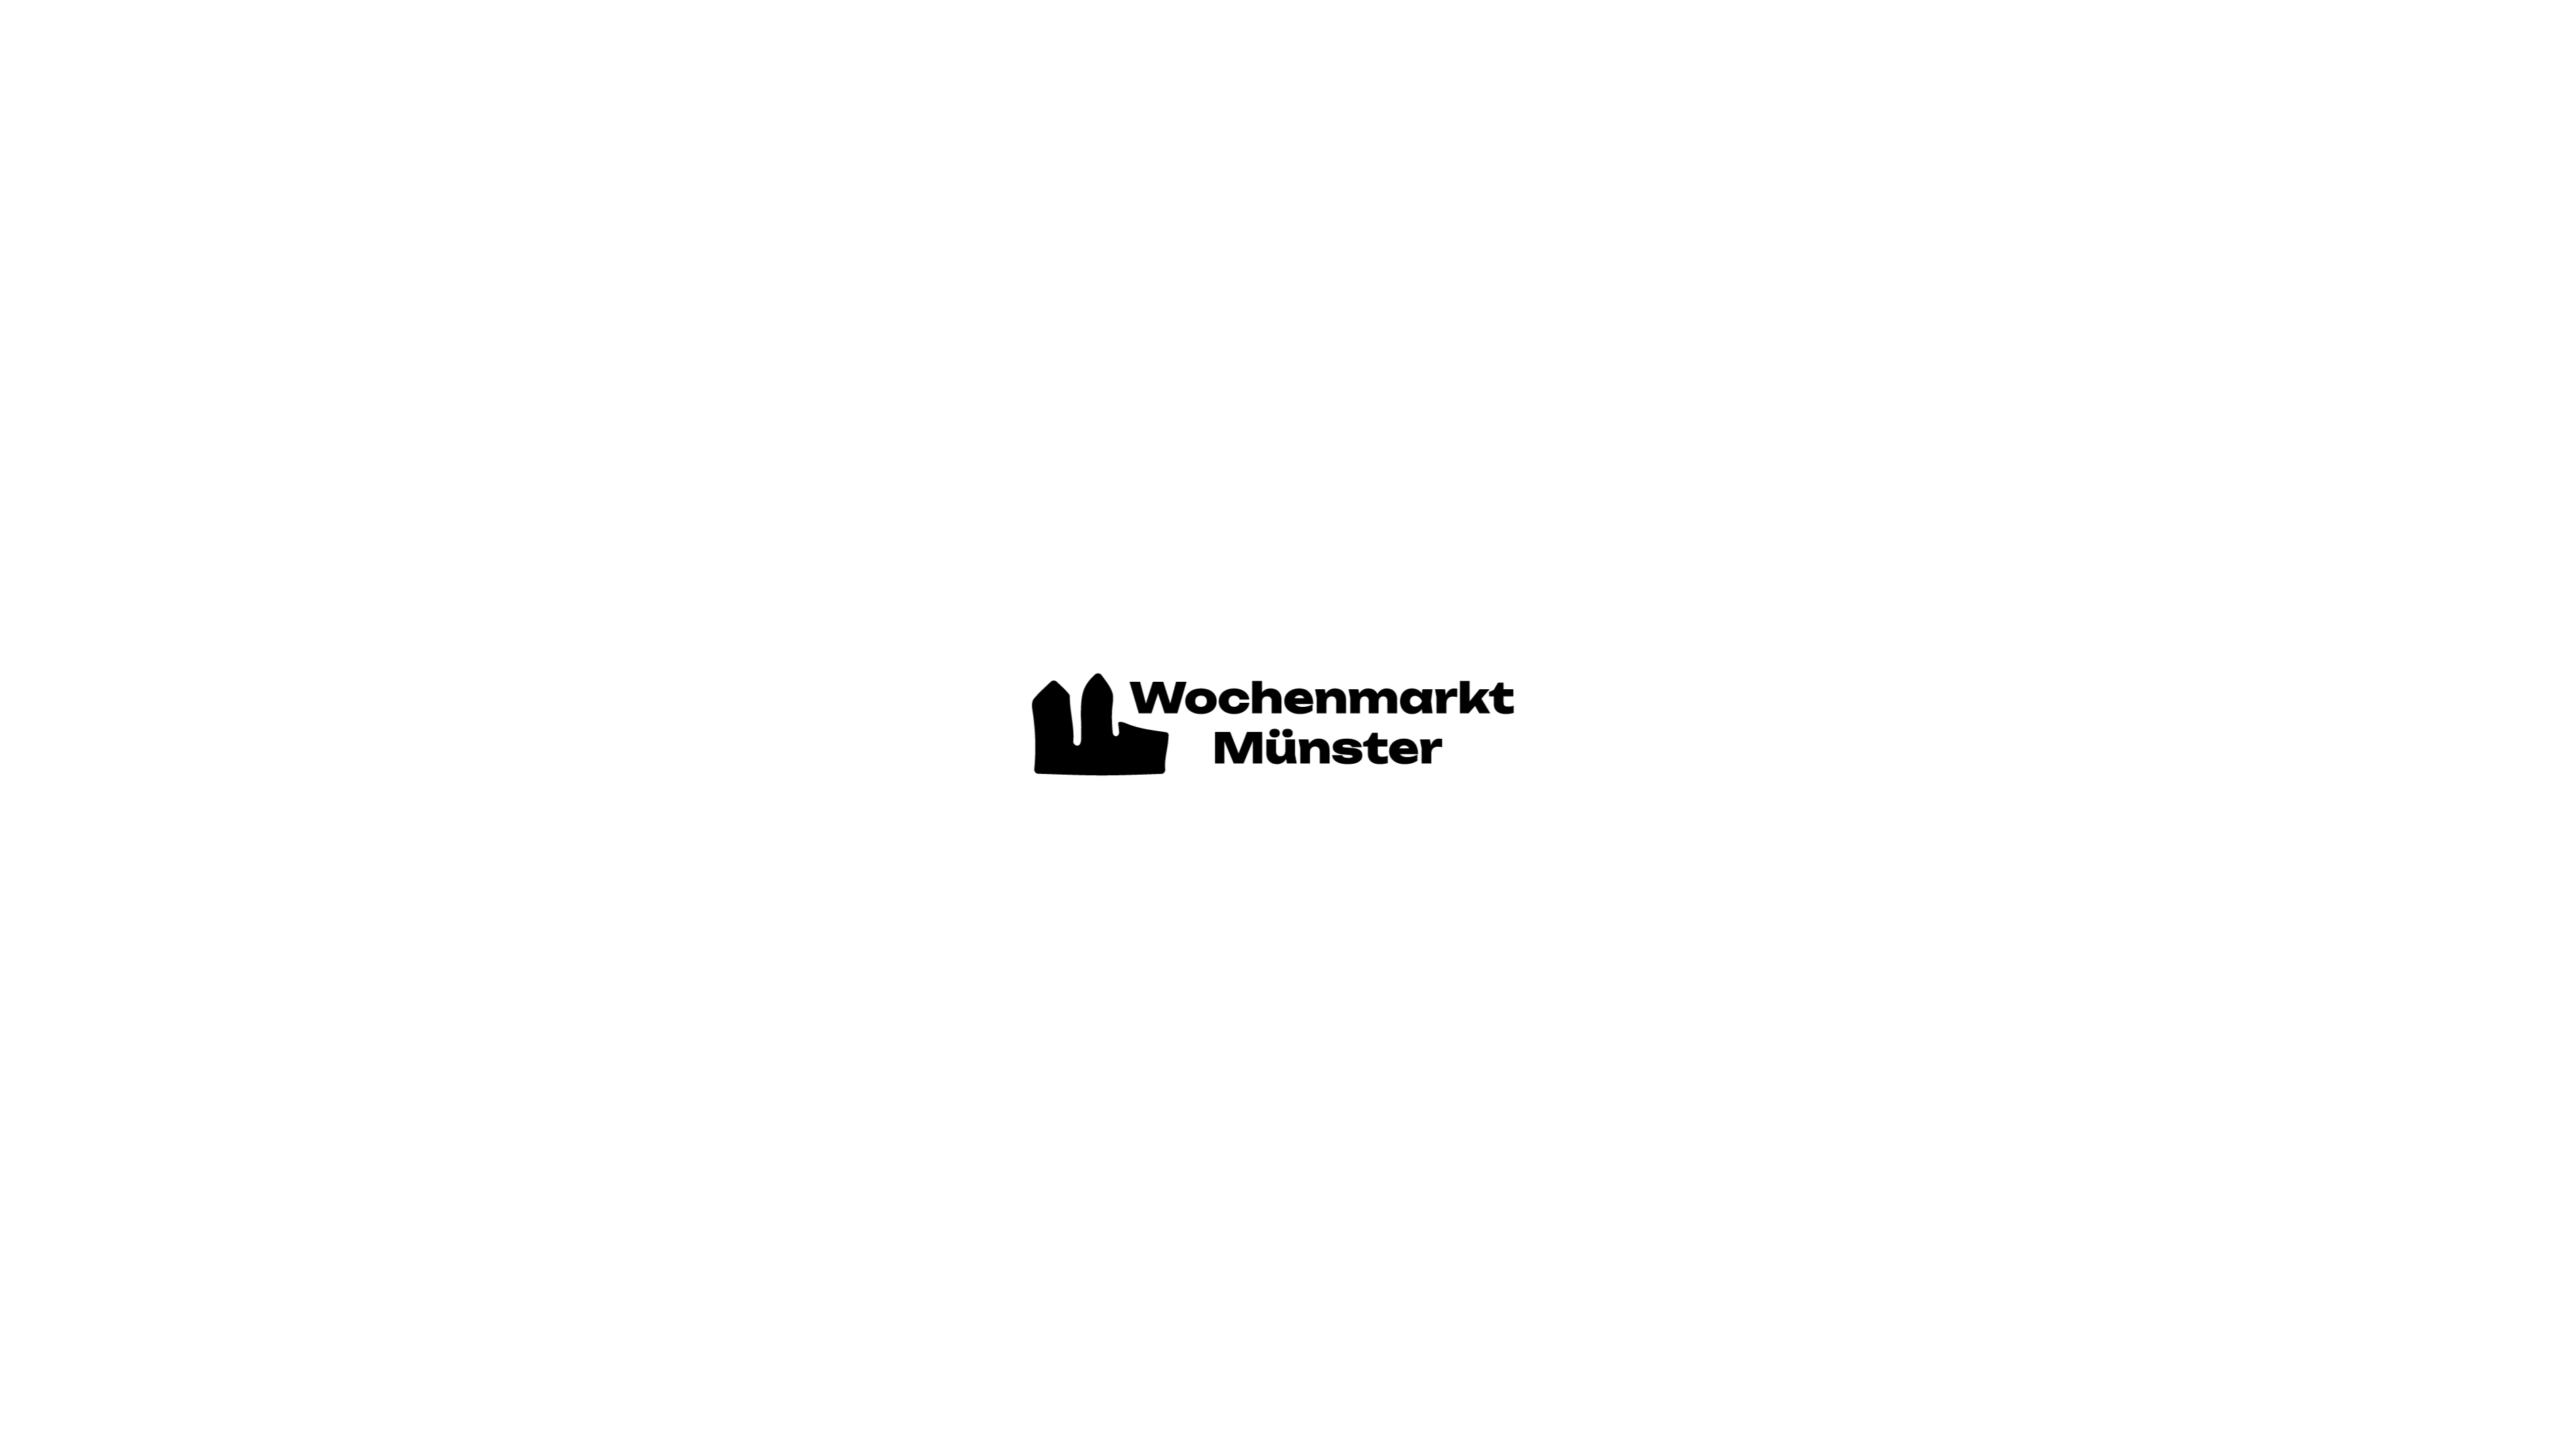 Wochenmarket Muenster Brand Design branding graphic design logo